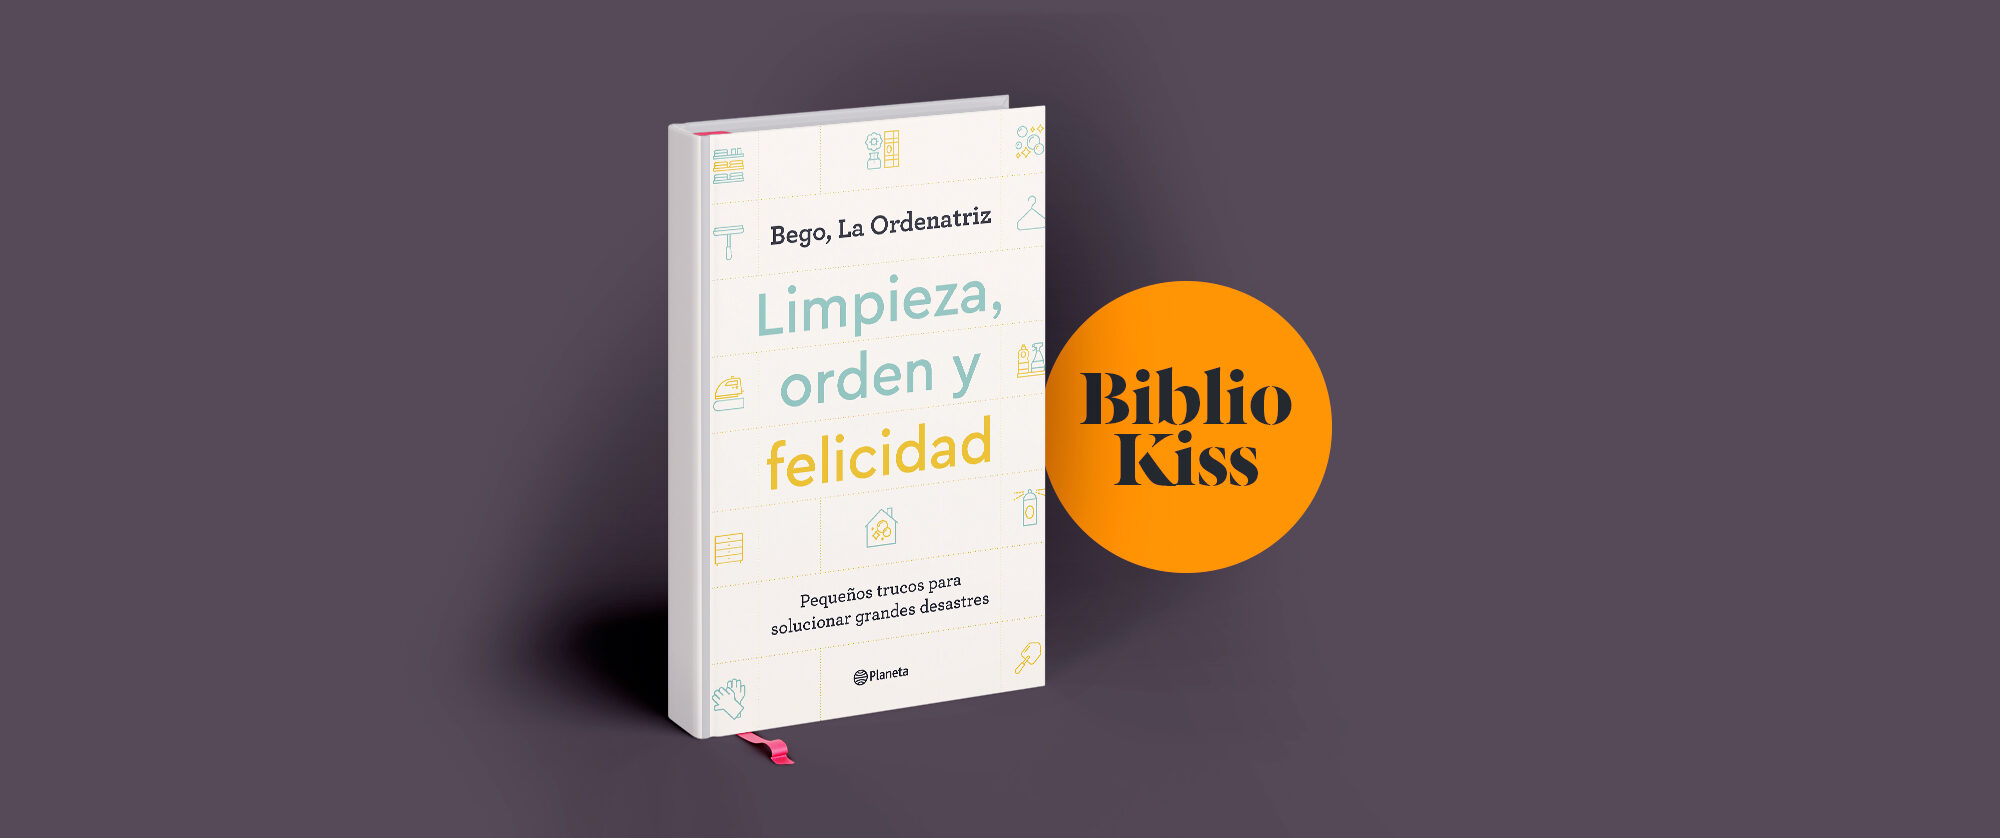 Entrevista a Bego La Ordenatriz sobre su nuevo libro “Limpieza, orden y  felicidad”